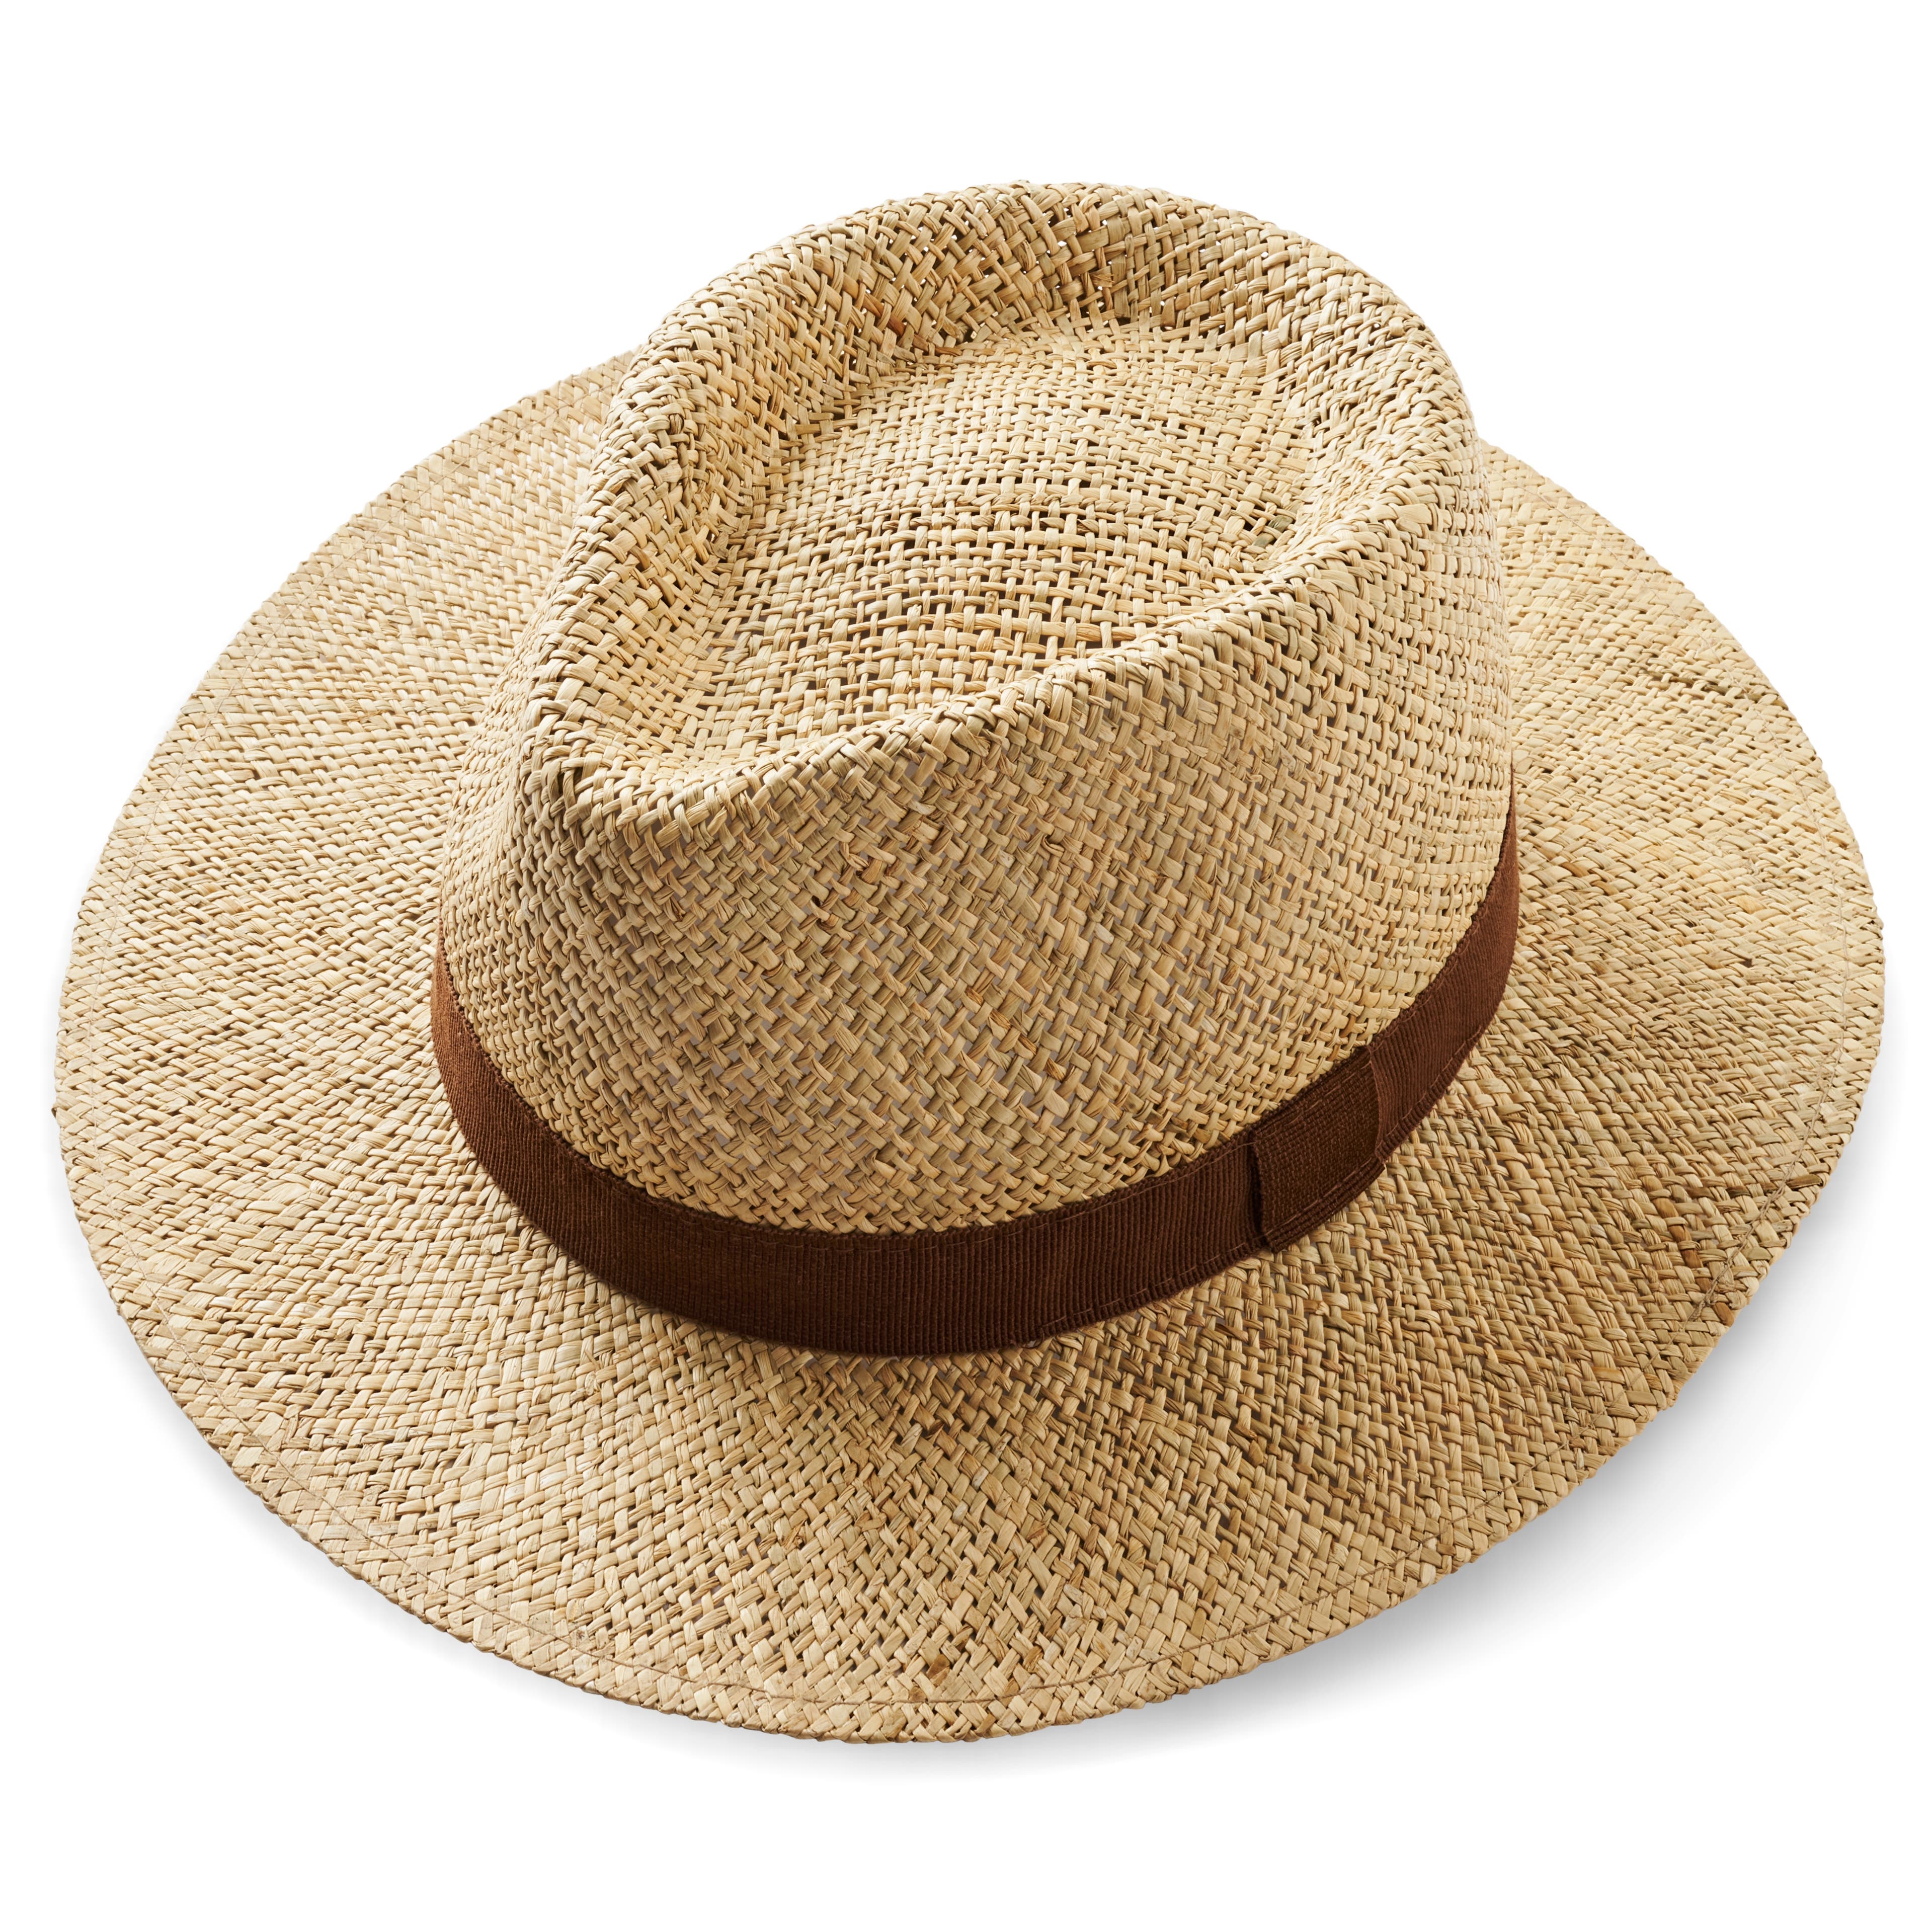 Prírodný slamený panamský klobúk s hnedou stuhou